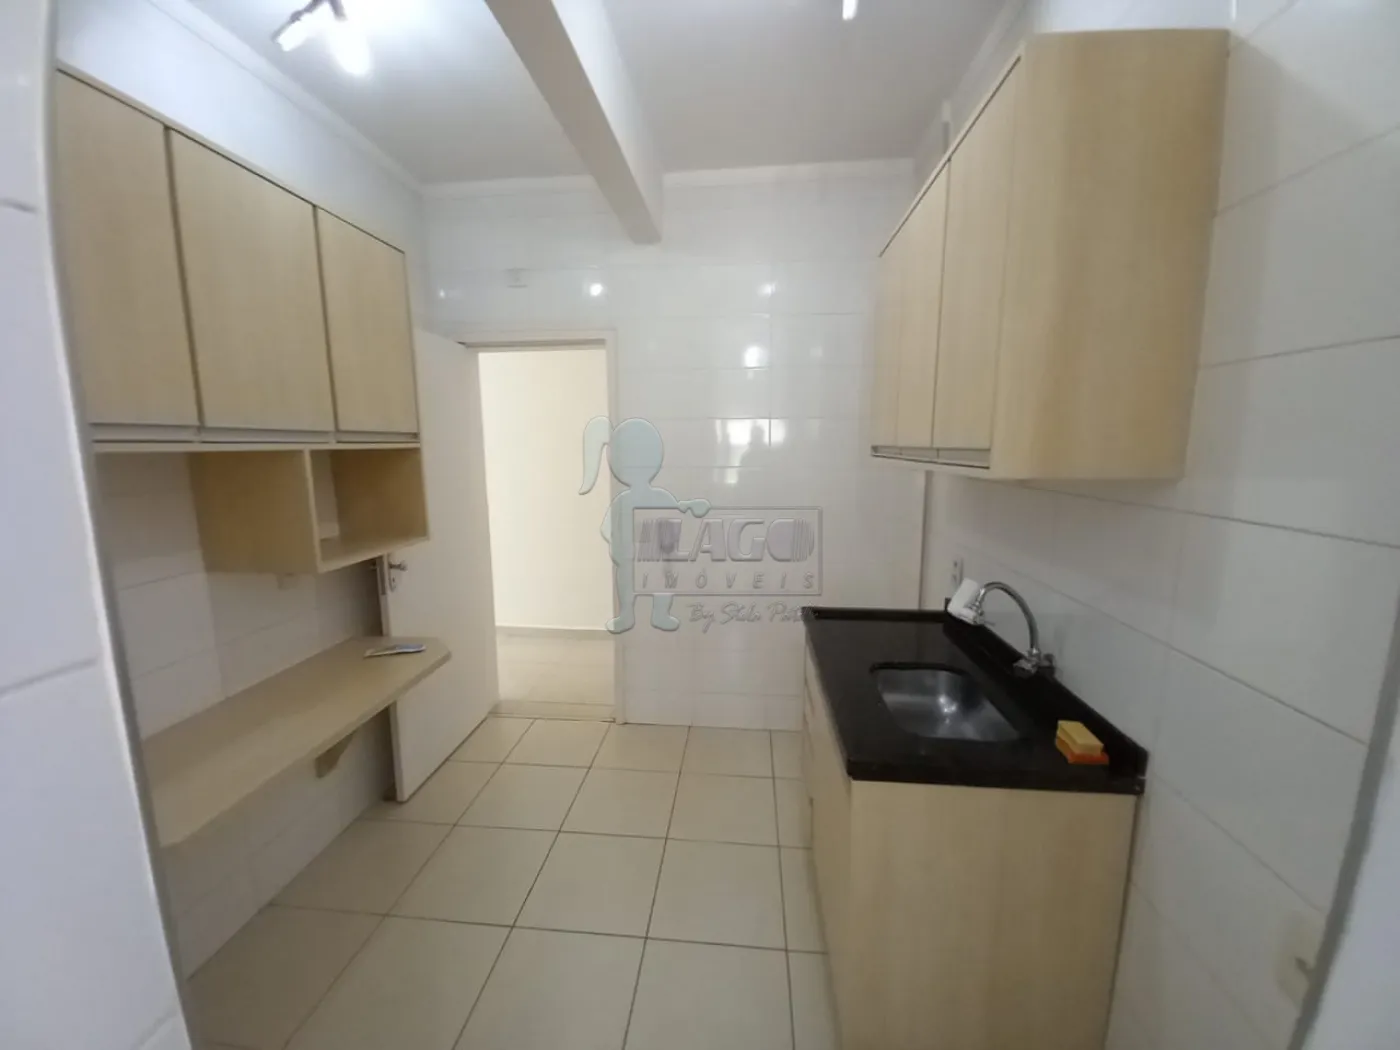 Alugar Apartamento / Padrão em Ribeirão Preto R$ 1.700,00 - Foto 11